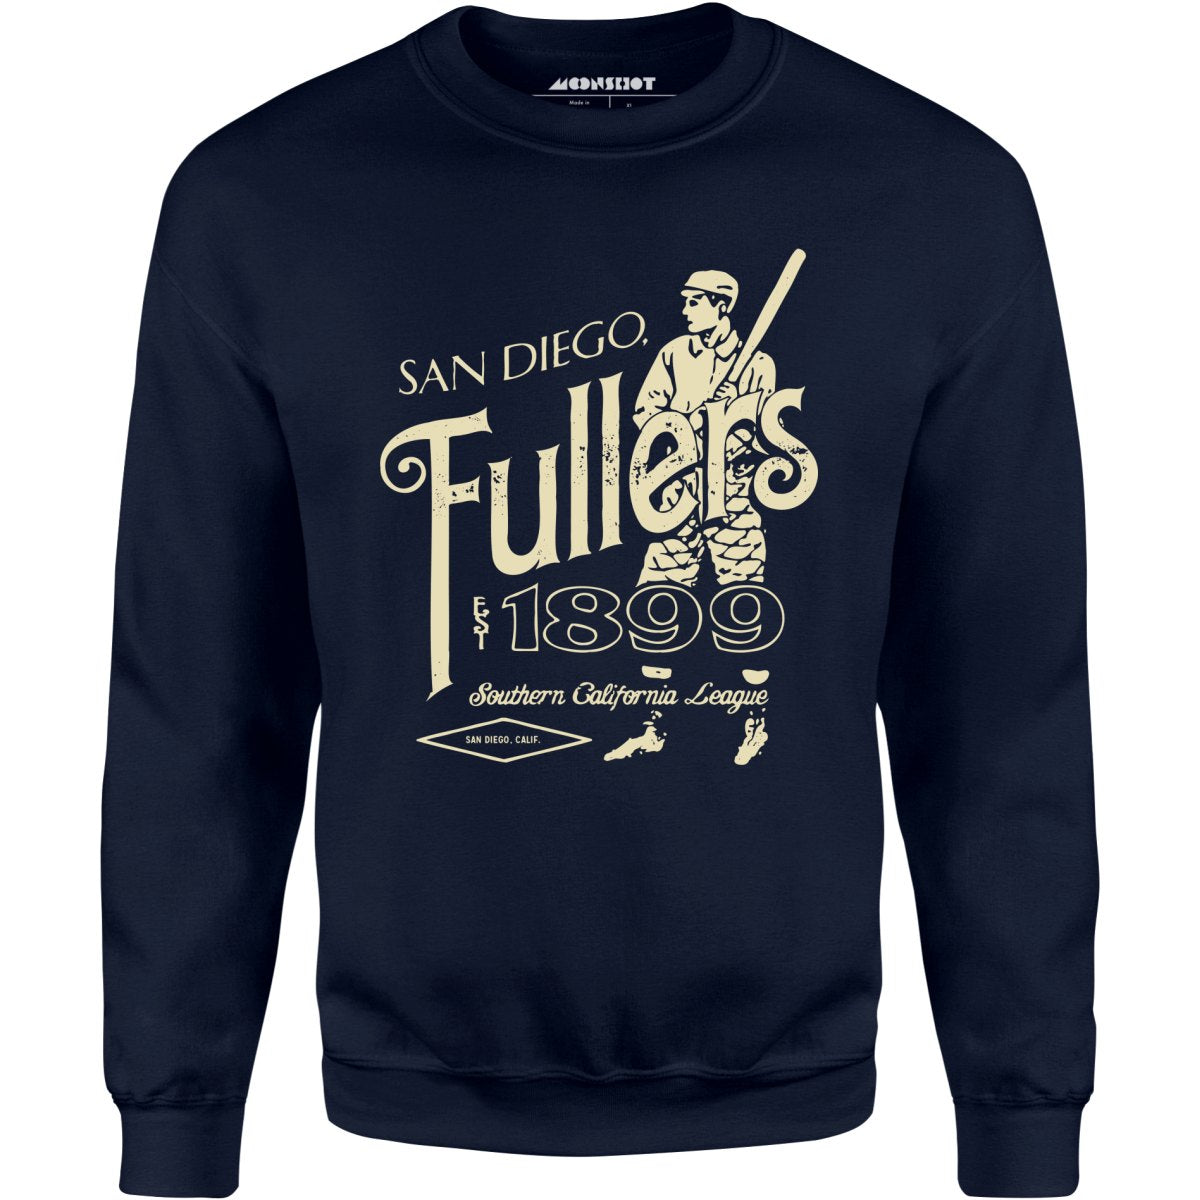 San Diego Fullers - California - Vintage Defunct Baseball Teams - Unisex Sweatshirt